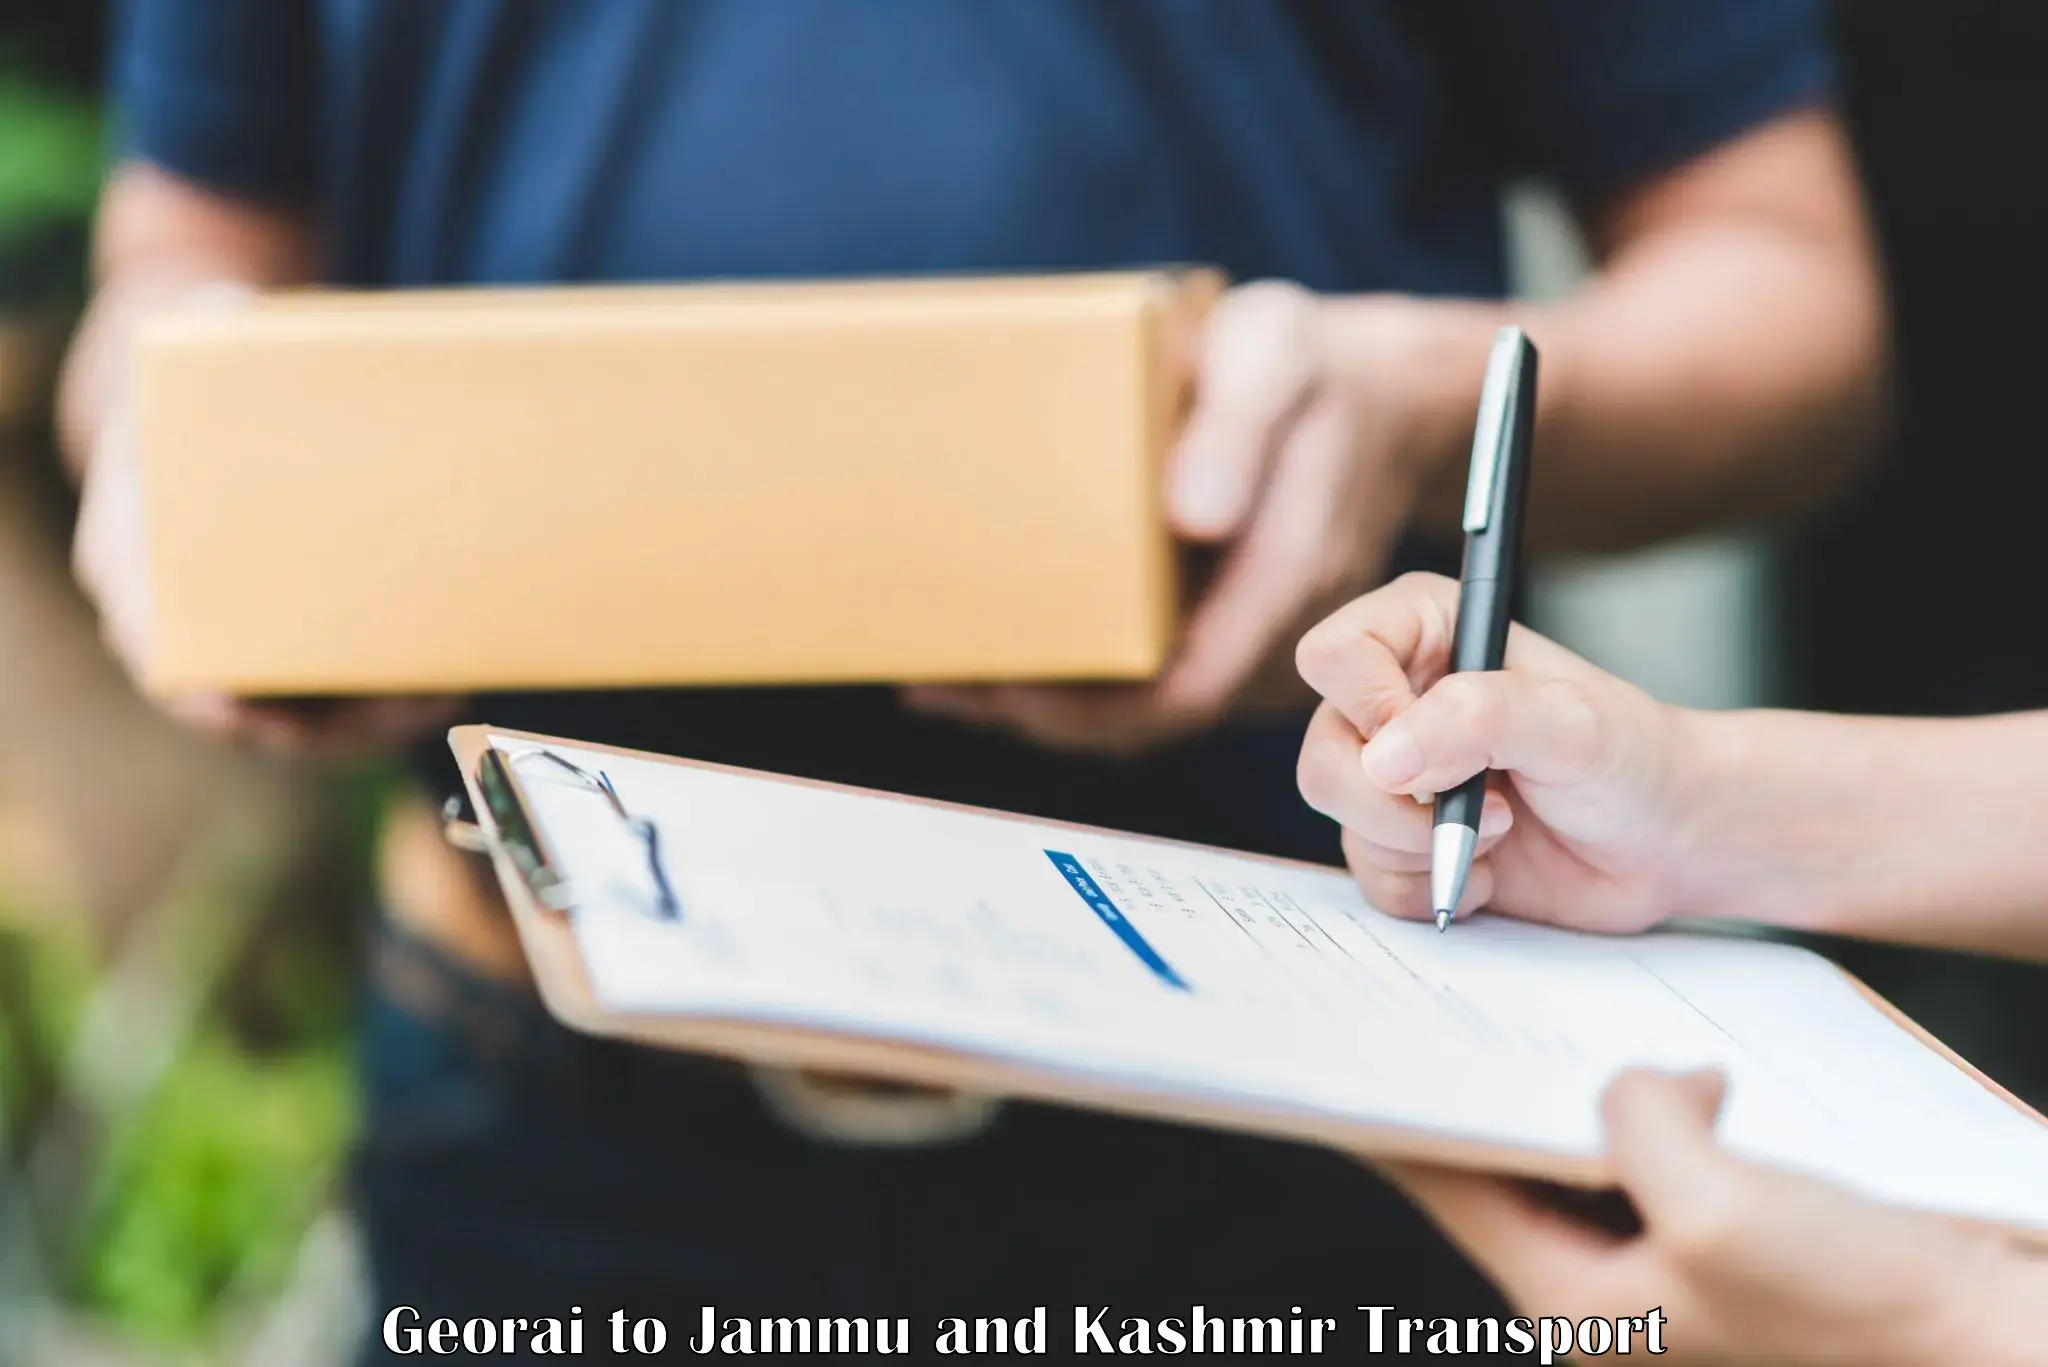 Daily transport service Georai to Jammu